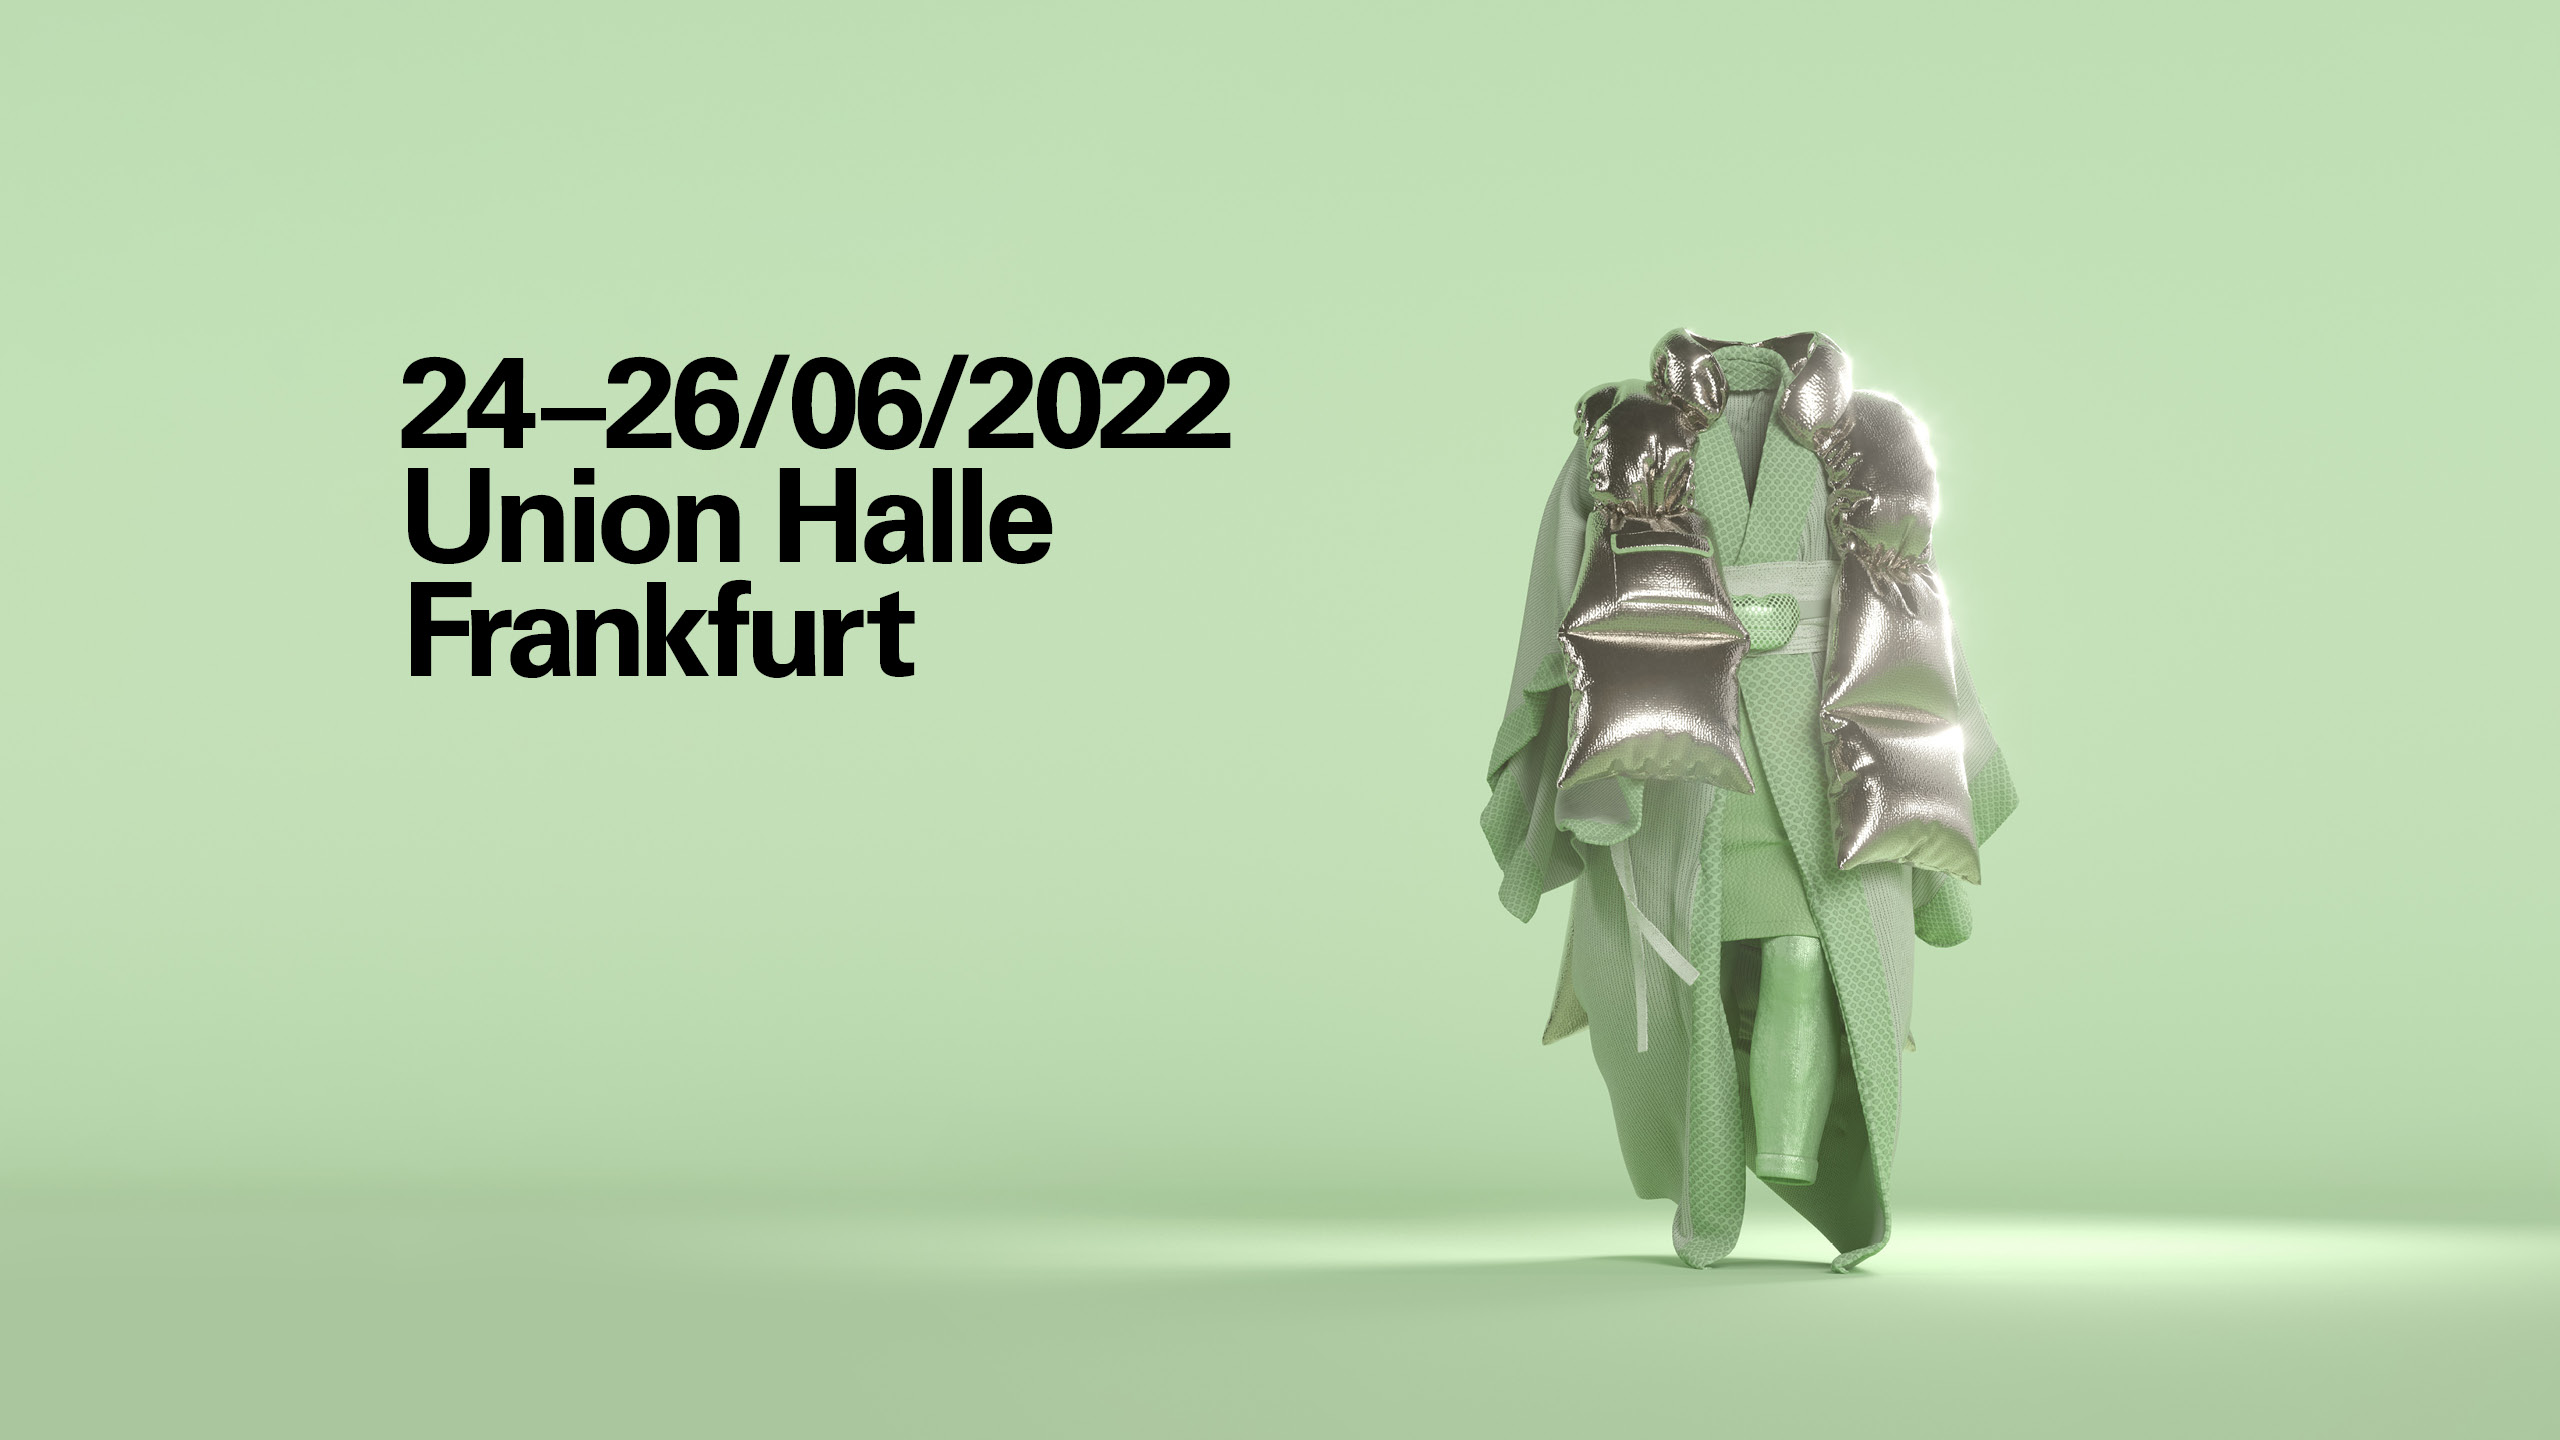 Neonyt Lab 2022: 24-26/06/2022, Union Halle, Frankfurt am Main